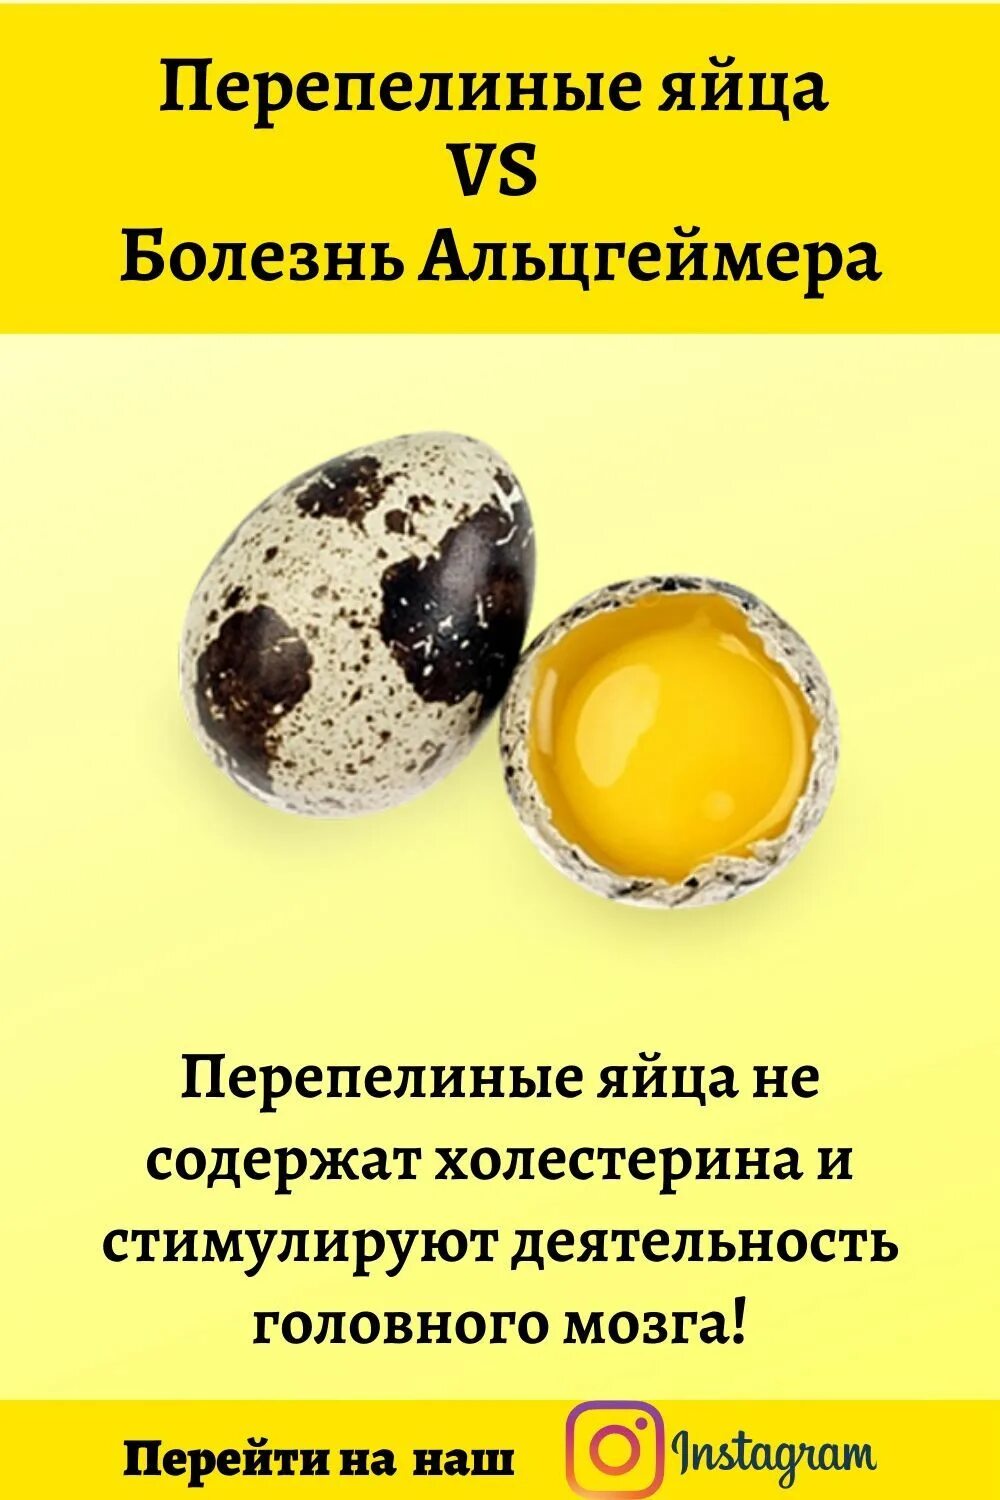 Яйцо перепелиное. Холестерин в перепелиных яйцах. Размер перепелиного яйца. Витамины в перепелиных яйцах. Сколько перепелиных яиц в день можно ребенку